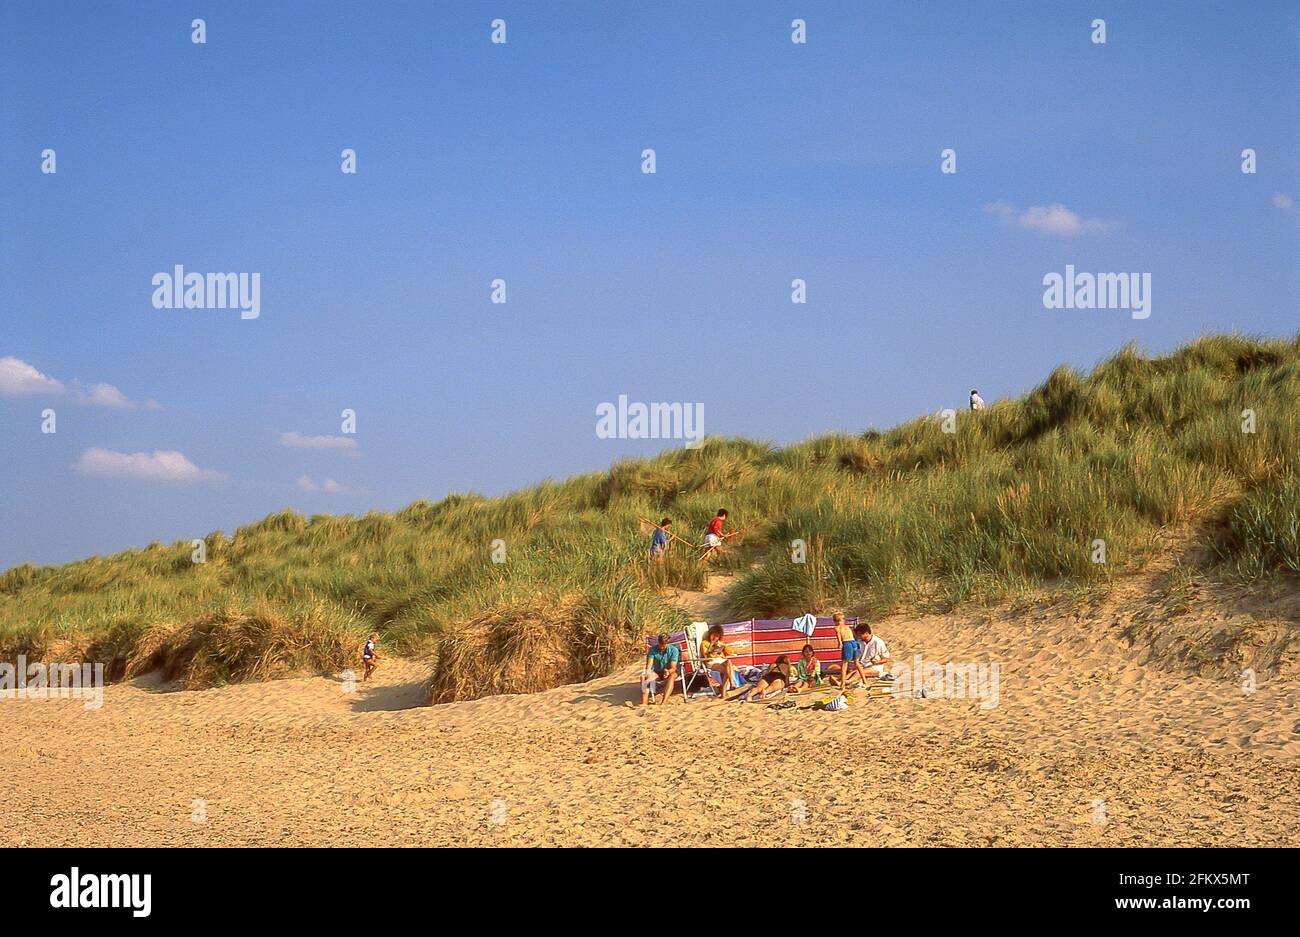 Holkham Beach and sand dunes, Holkham, Norfolk, England, United Kingdom Stock Photo